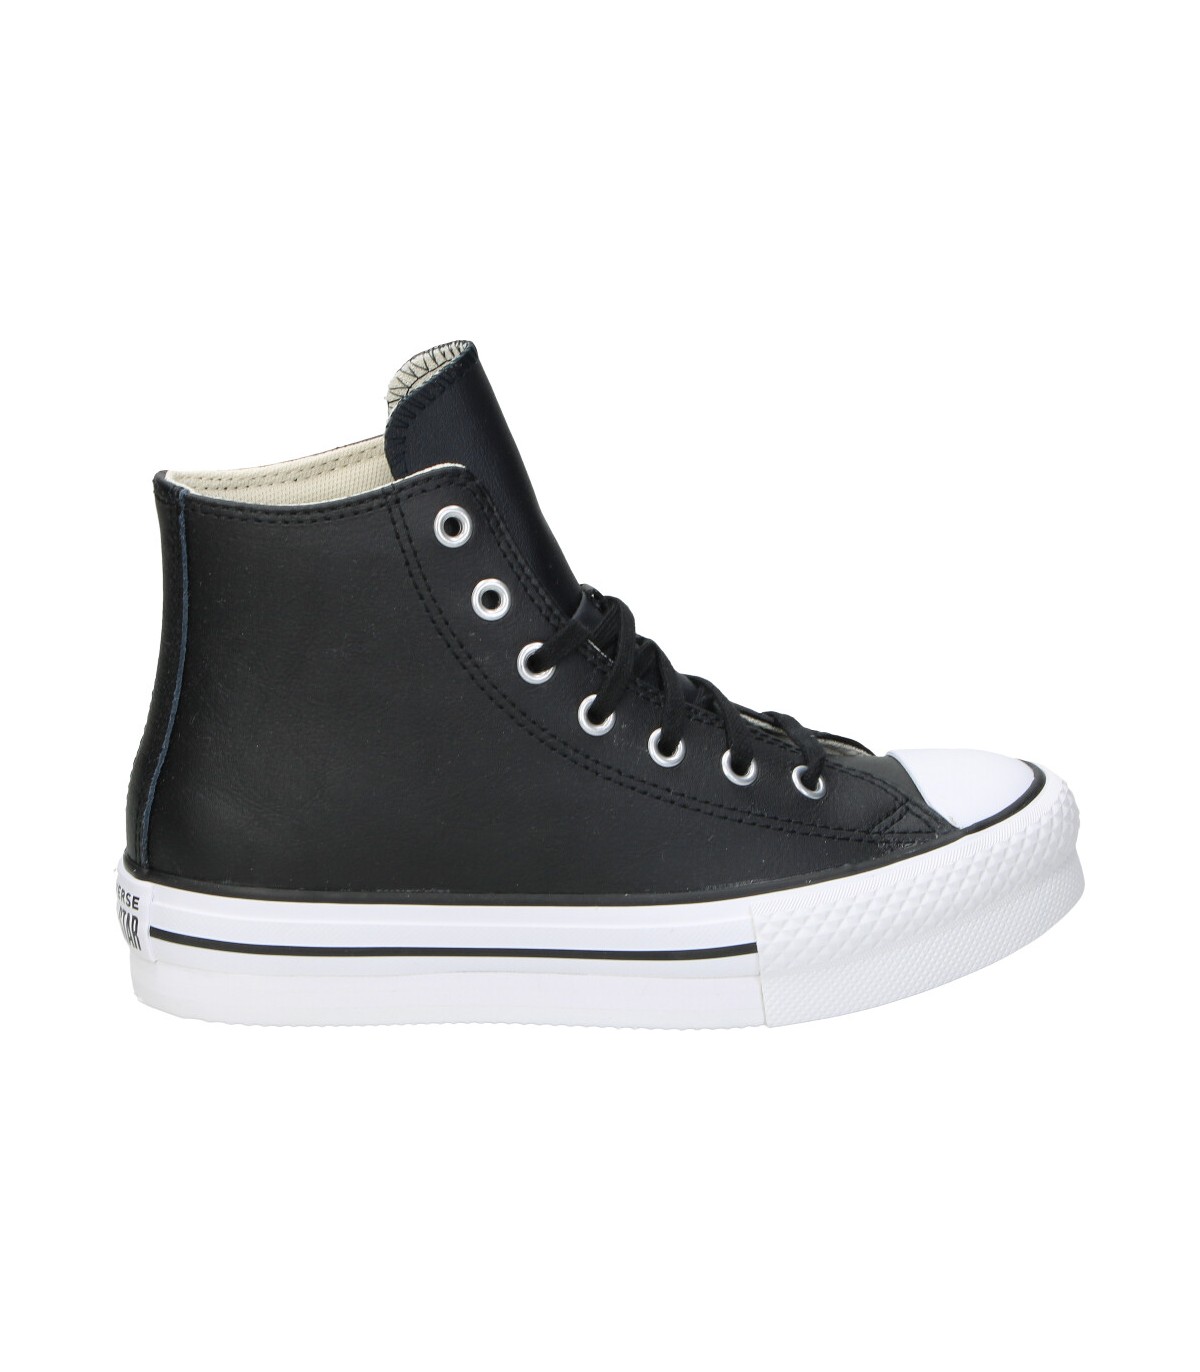 Zapatillas casual a01015c-001 color negro